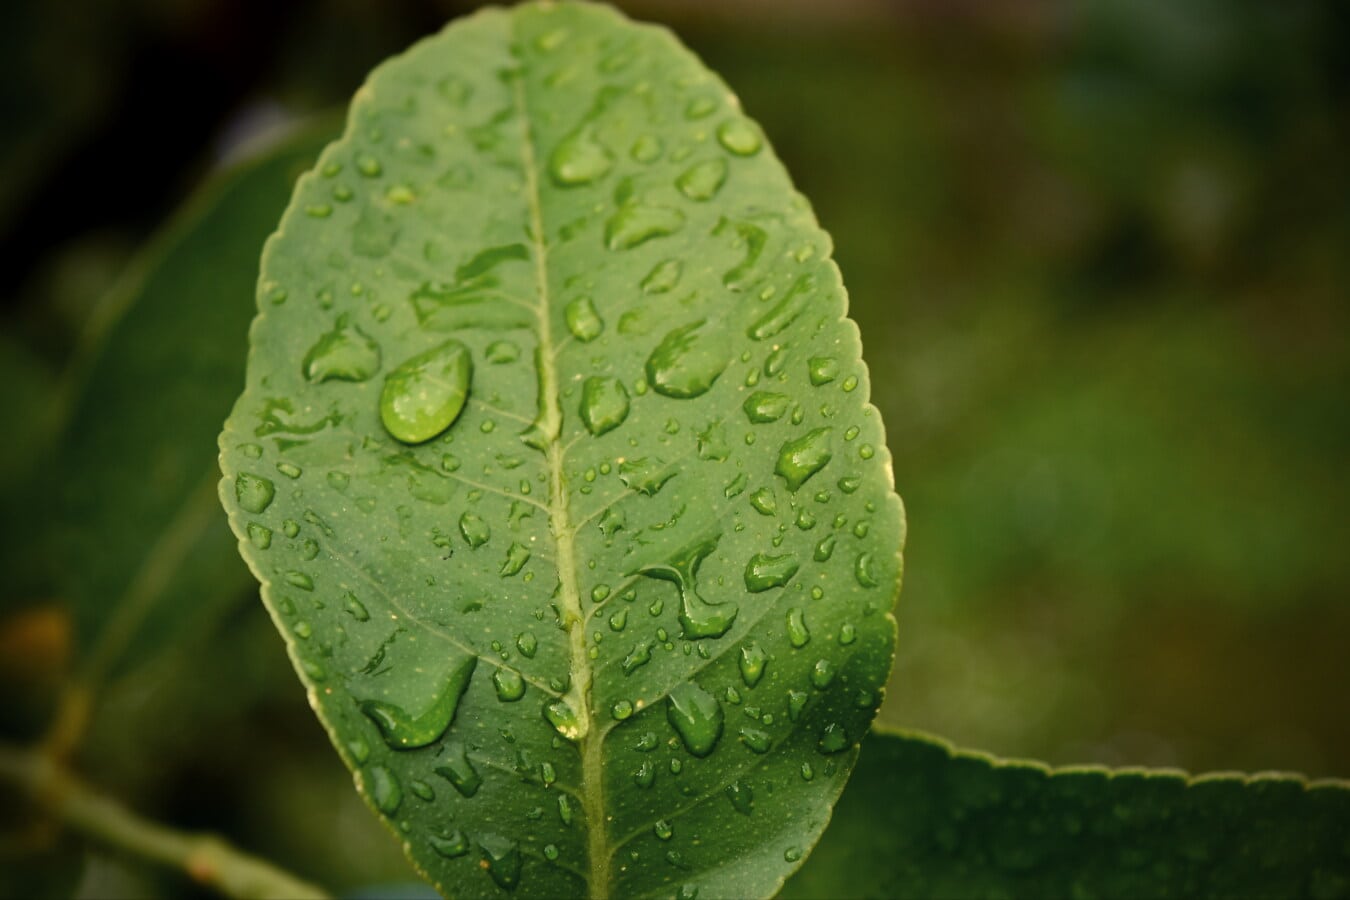 Flora, bylina, rosa, příroda, déšť, list, závod, zahrada, mokrý, dešťová kapka